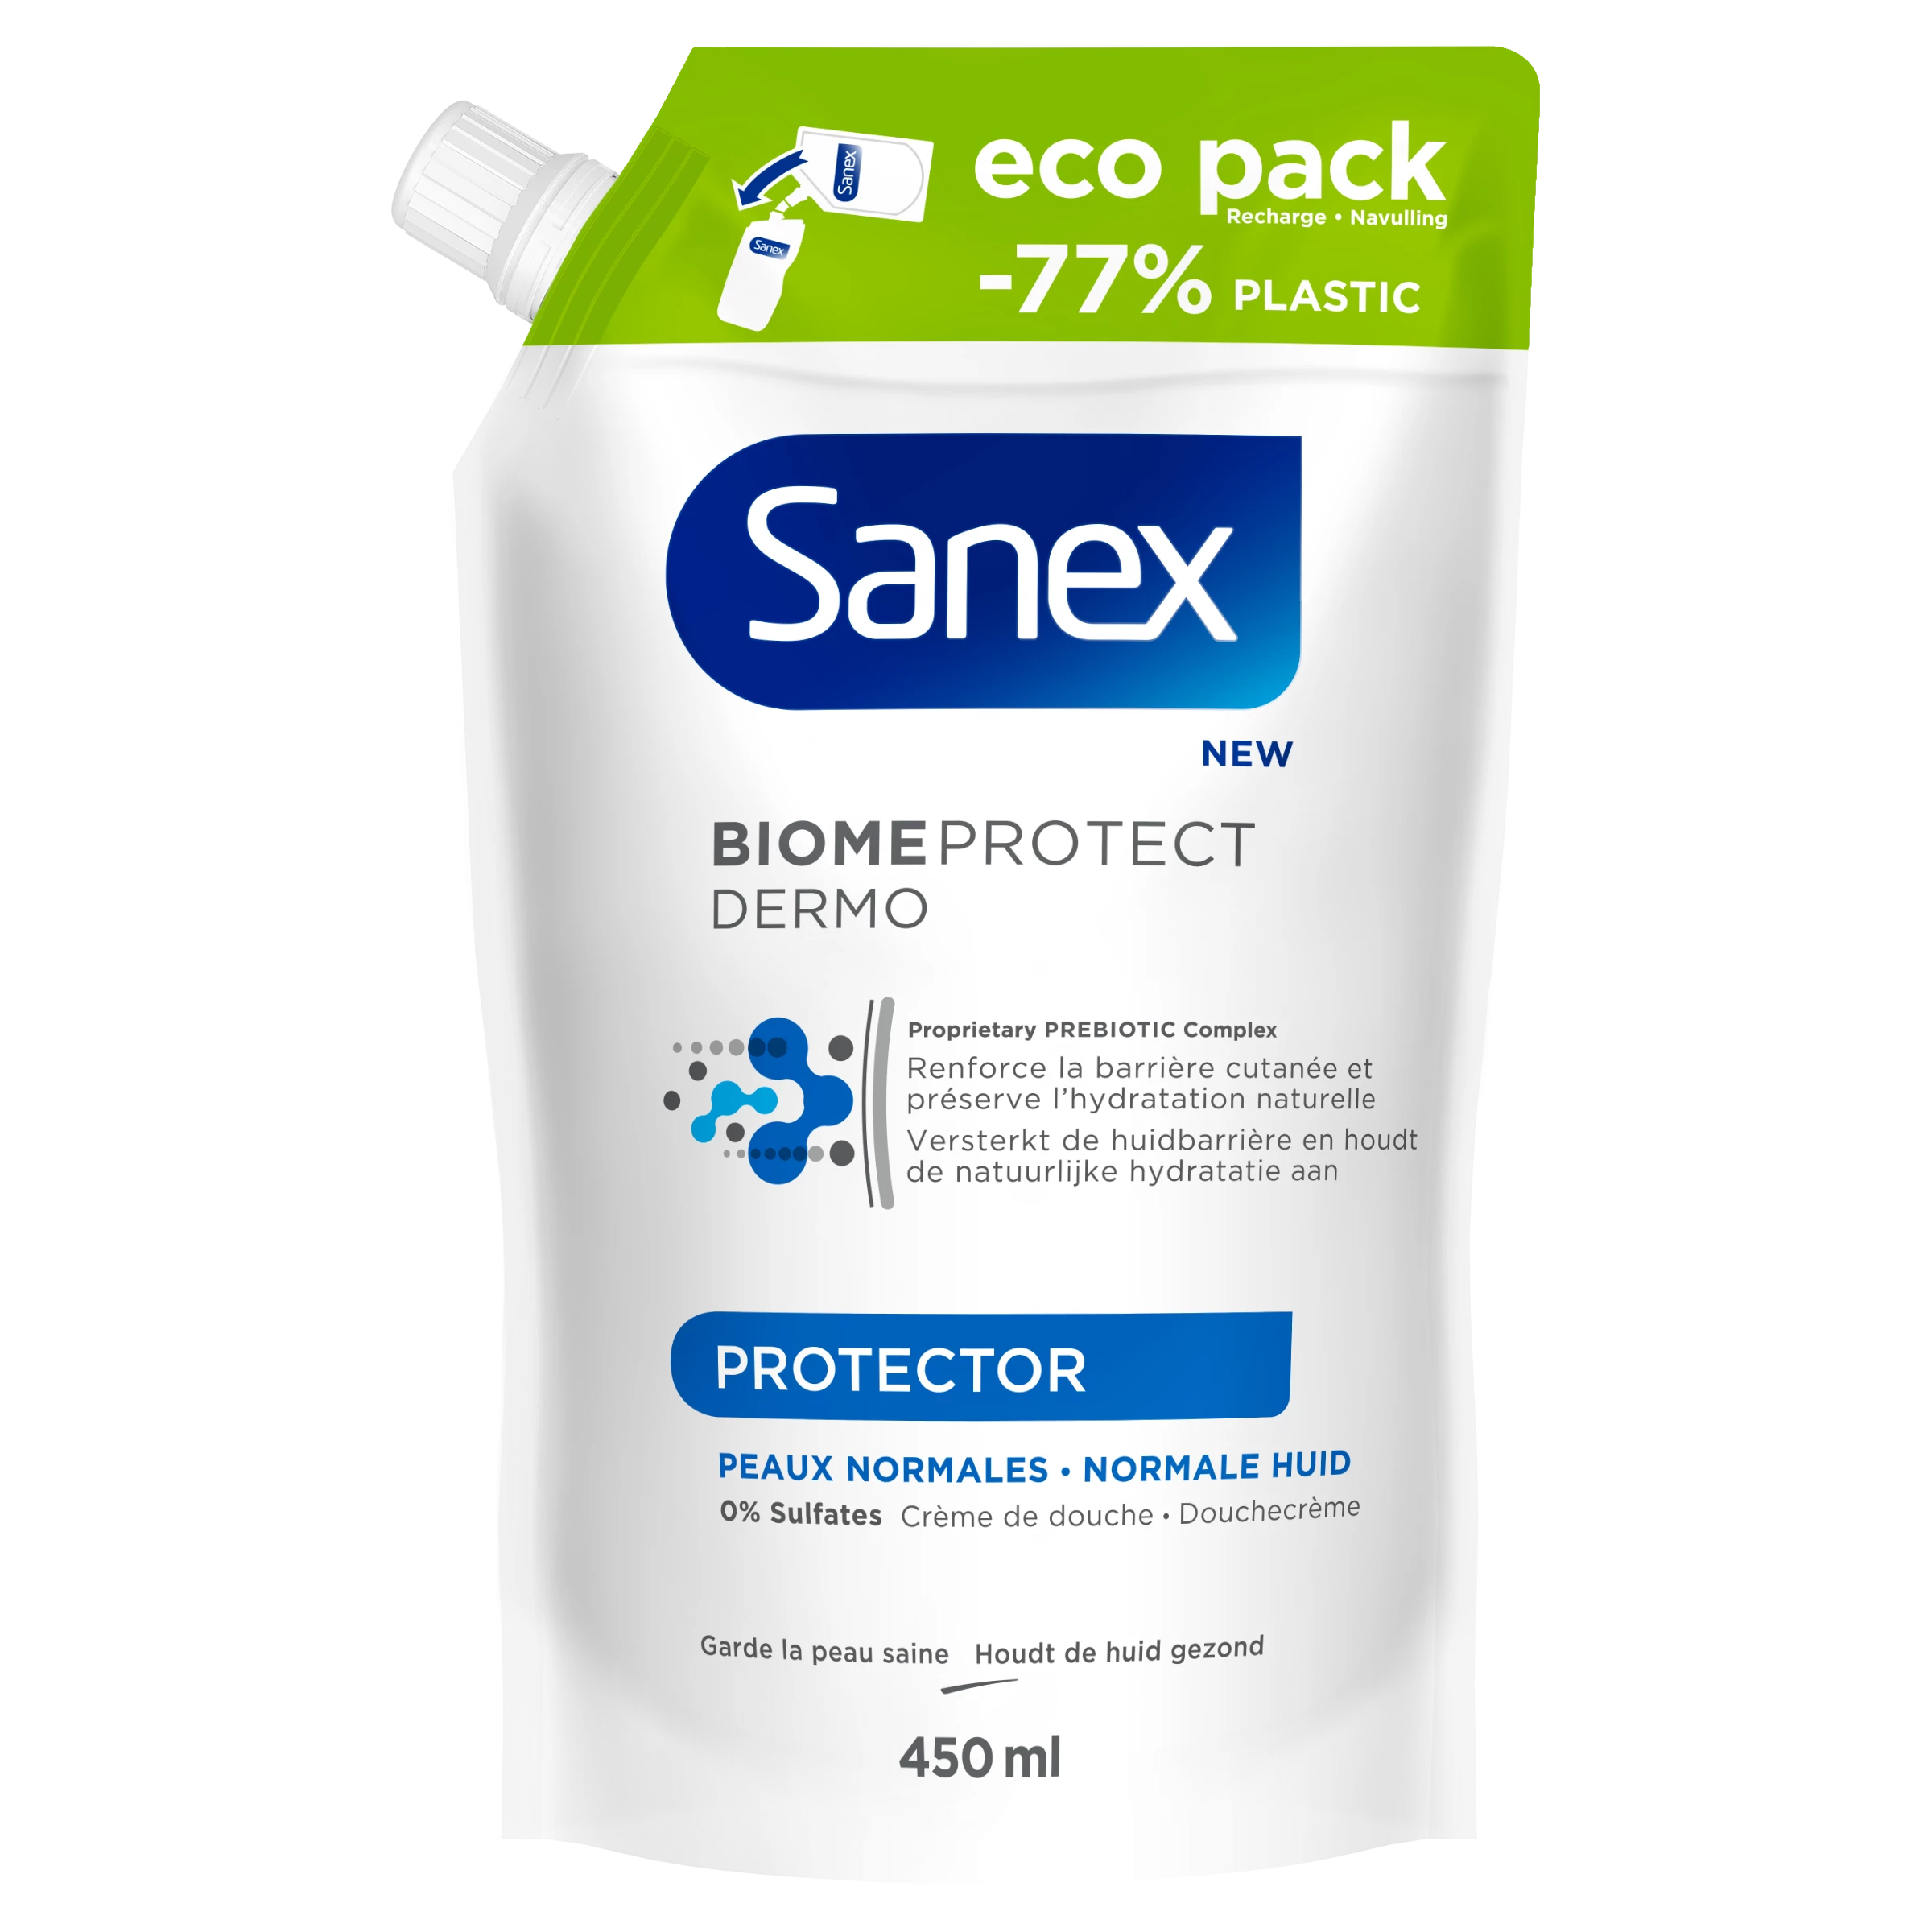 Sanex Biome Protec Rech 450ml